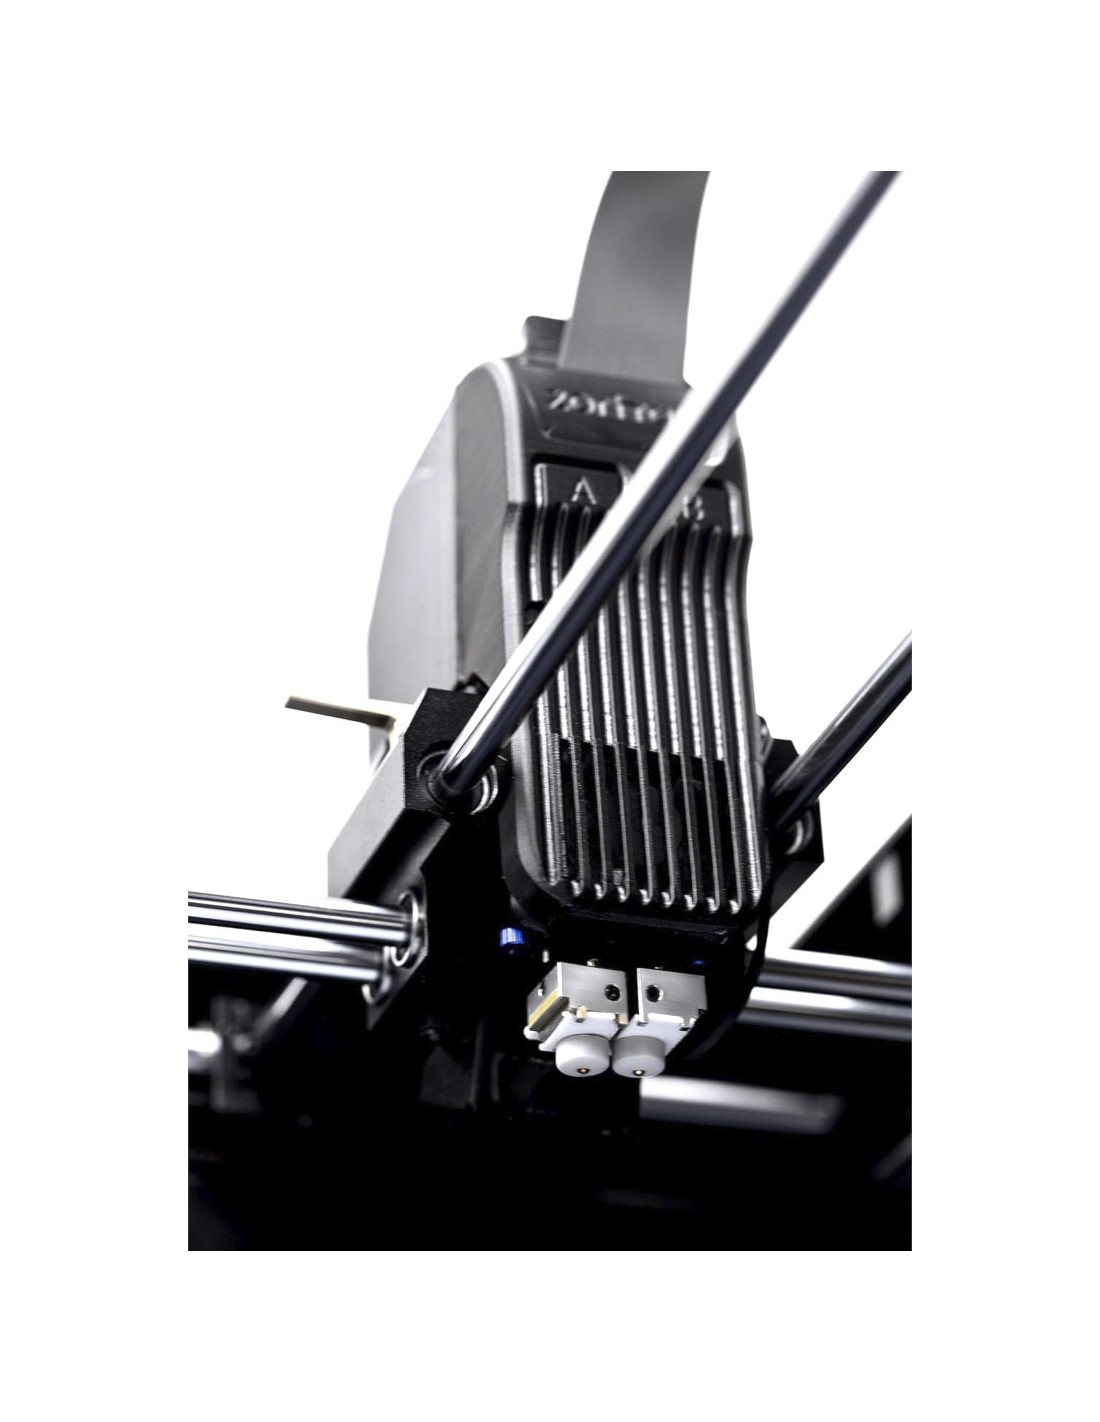 Zortrax M300 Dual - 3D printer